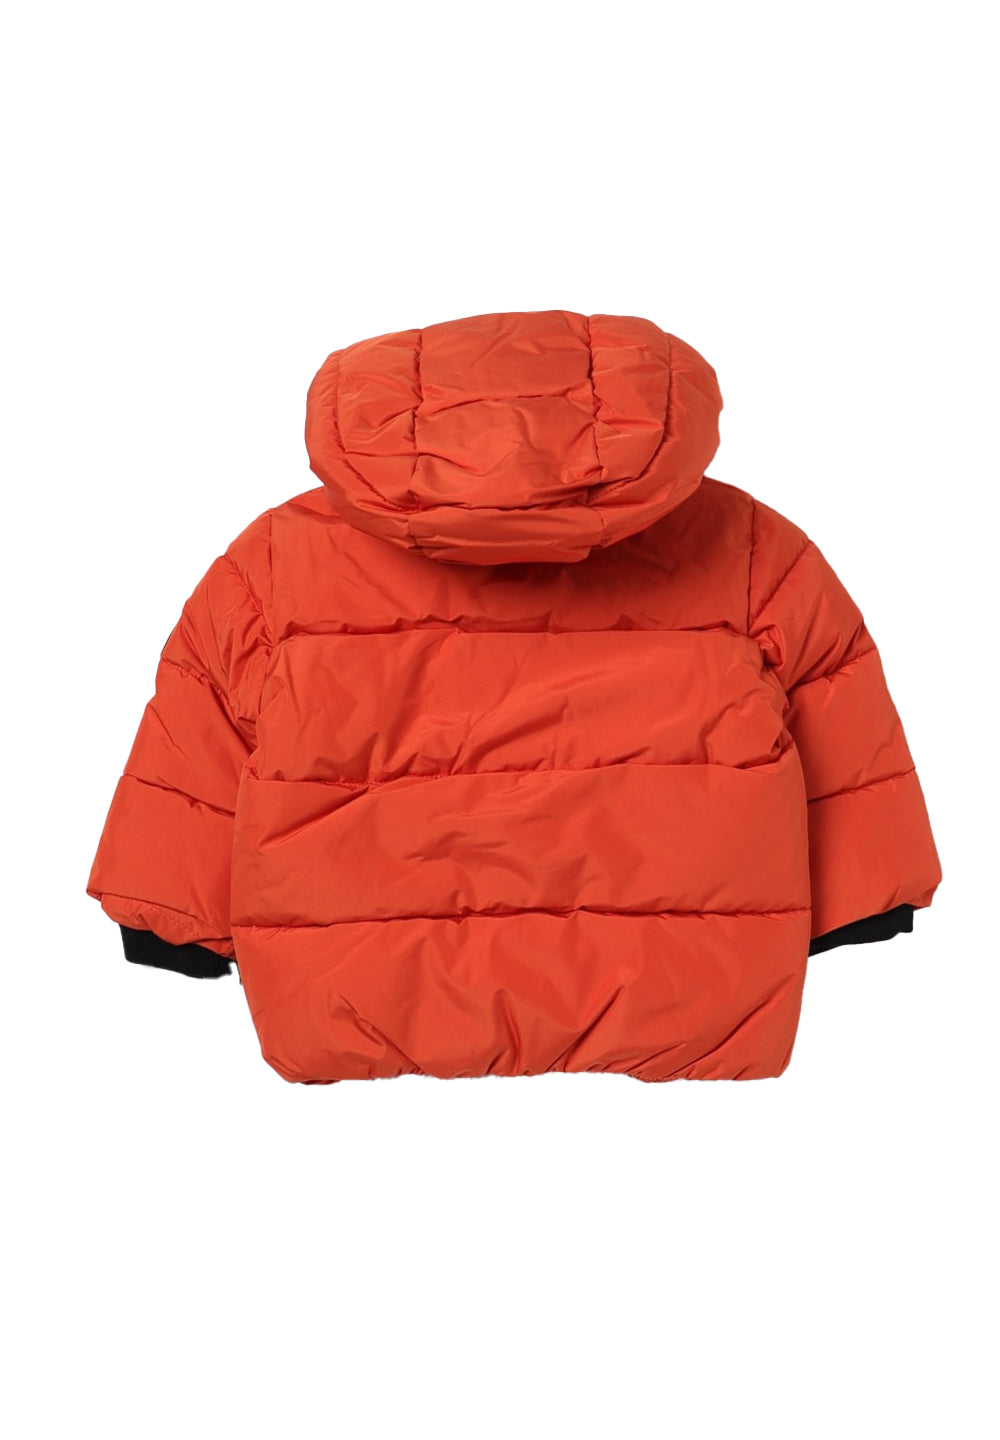 Orangefarbene Jacke für Jungen